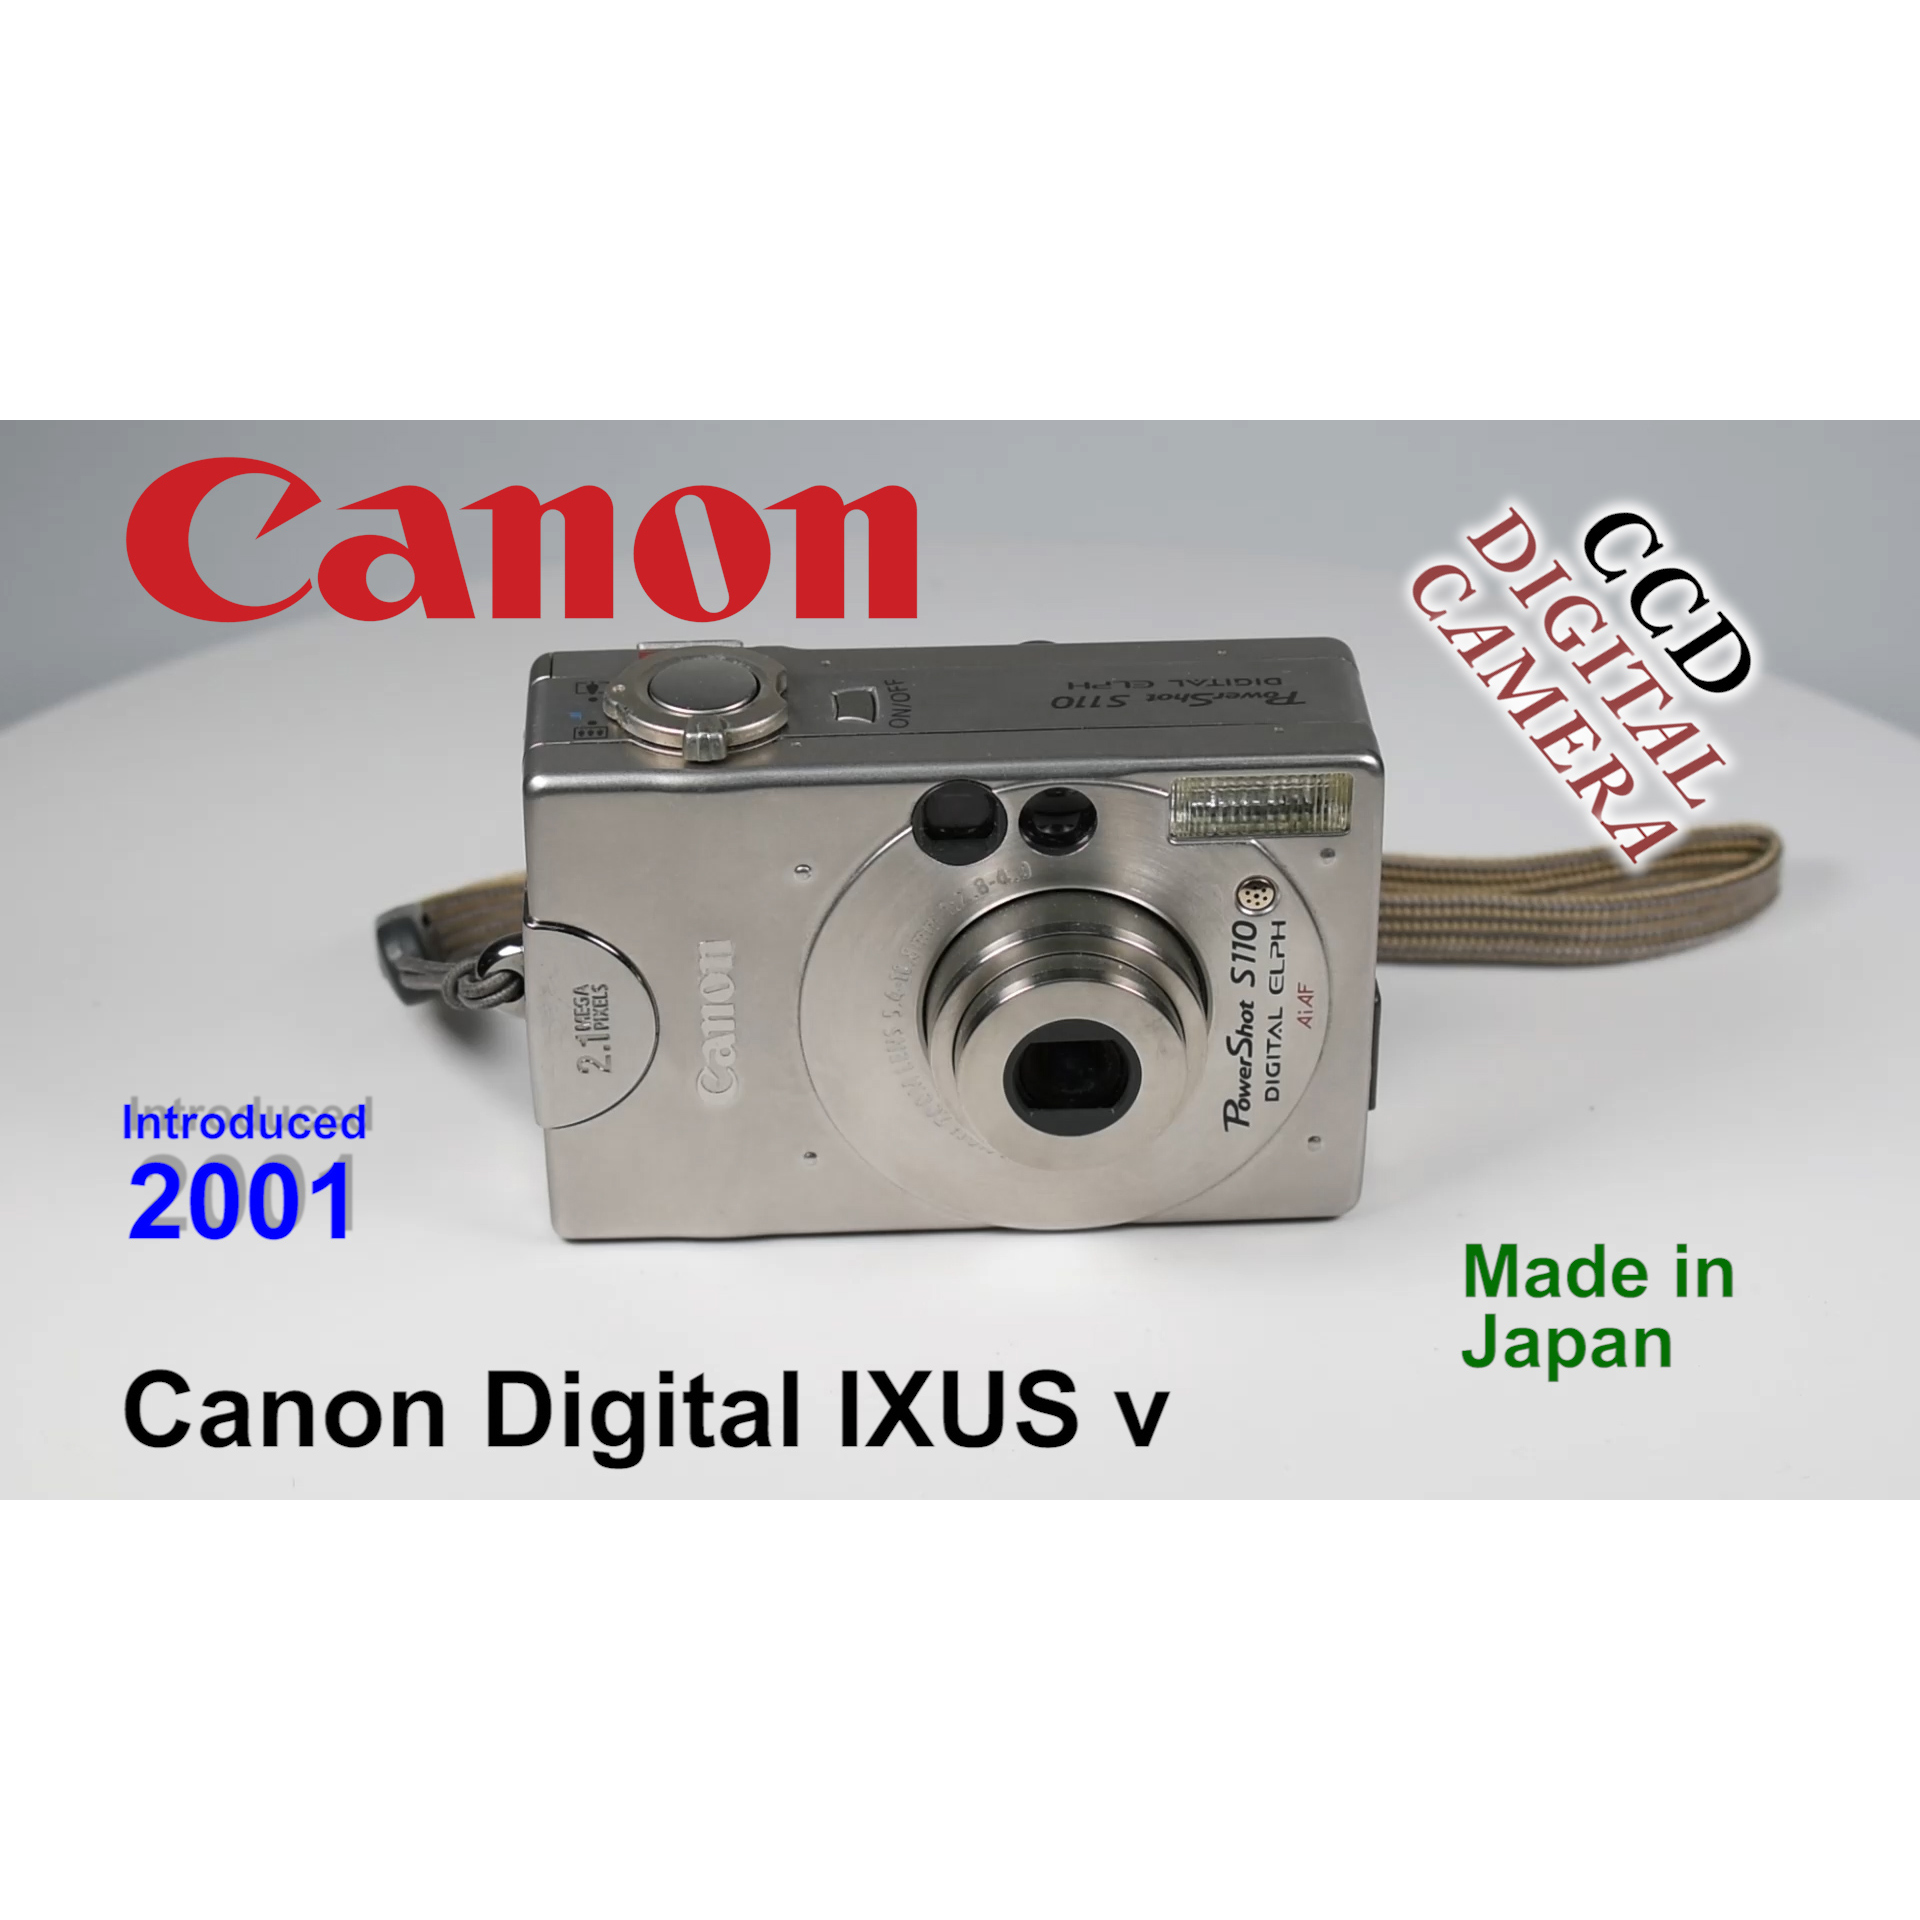 2001 Canon Digital IXUS v – CCD Digital Camera